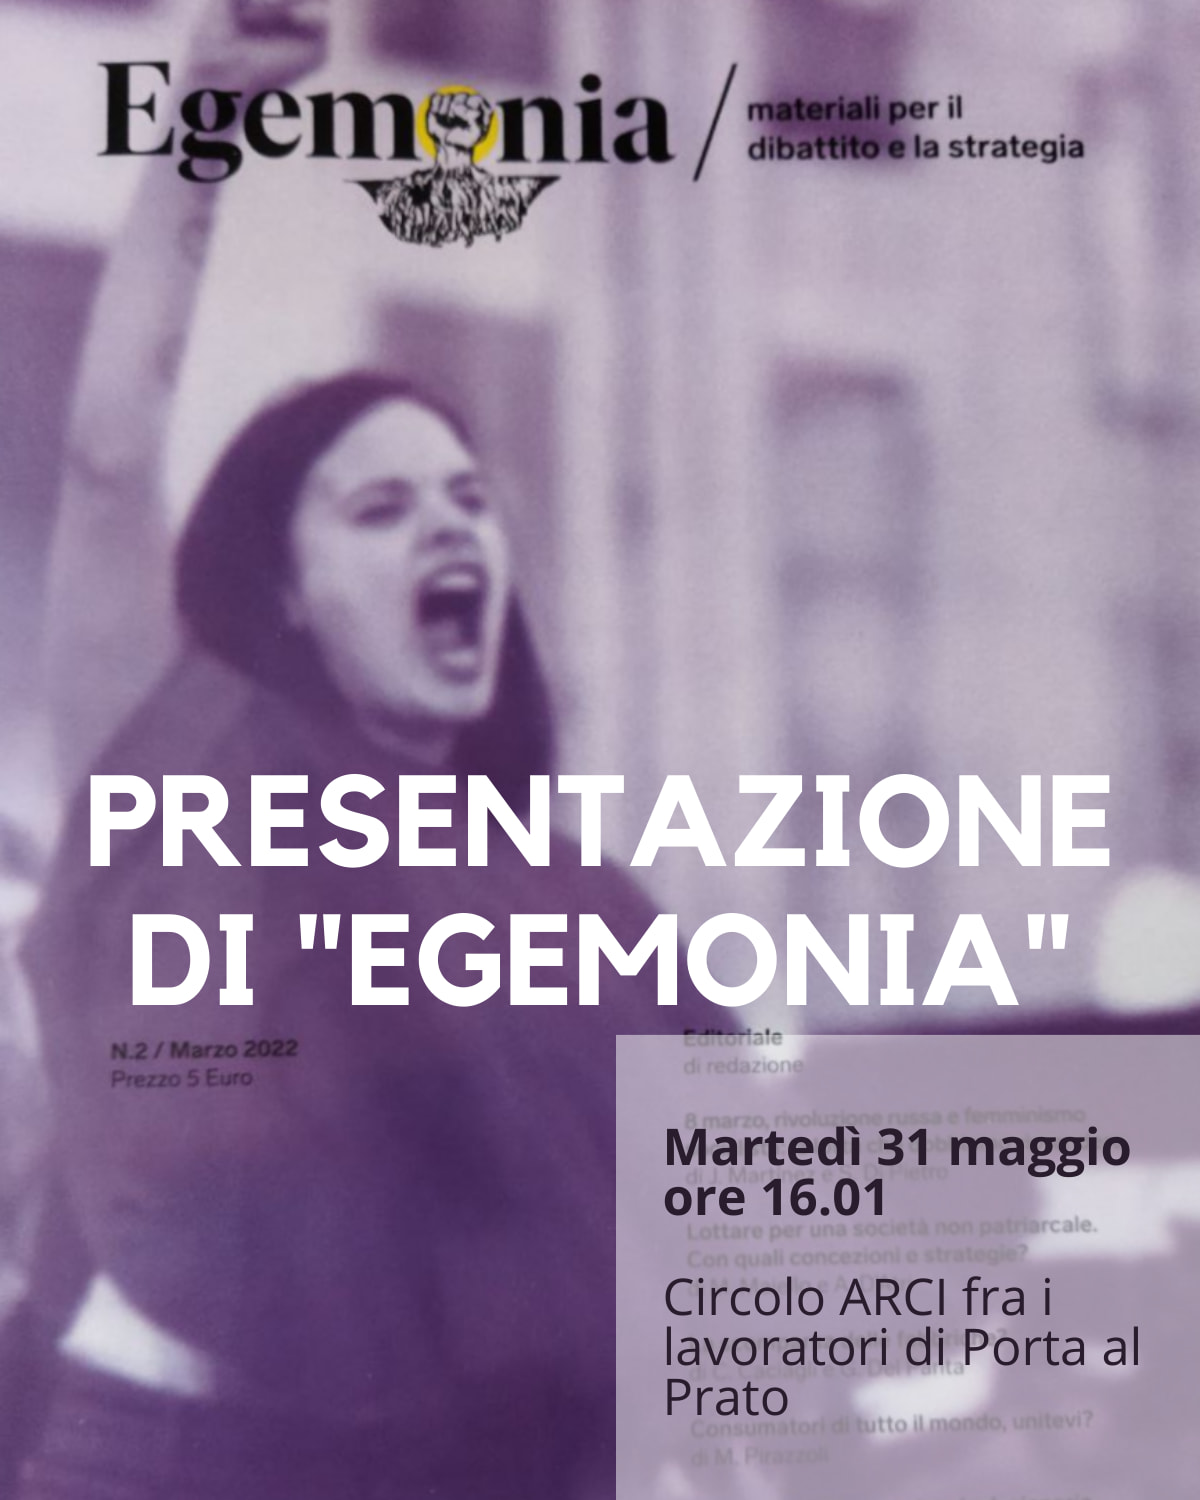 Martedì 31 presentazione di Egemonia#2 a Firenze